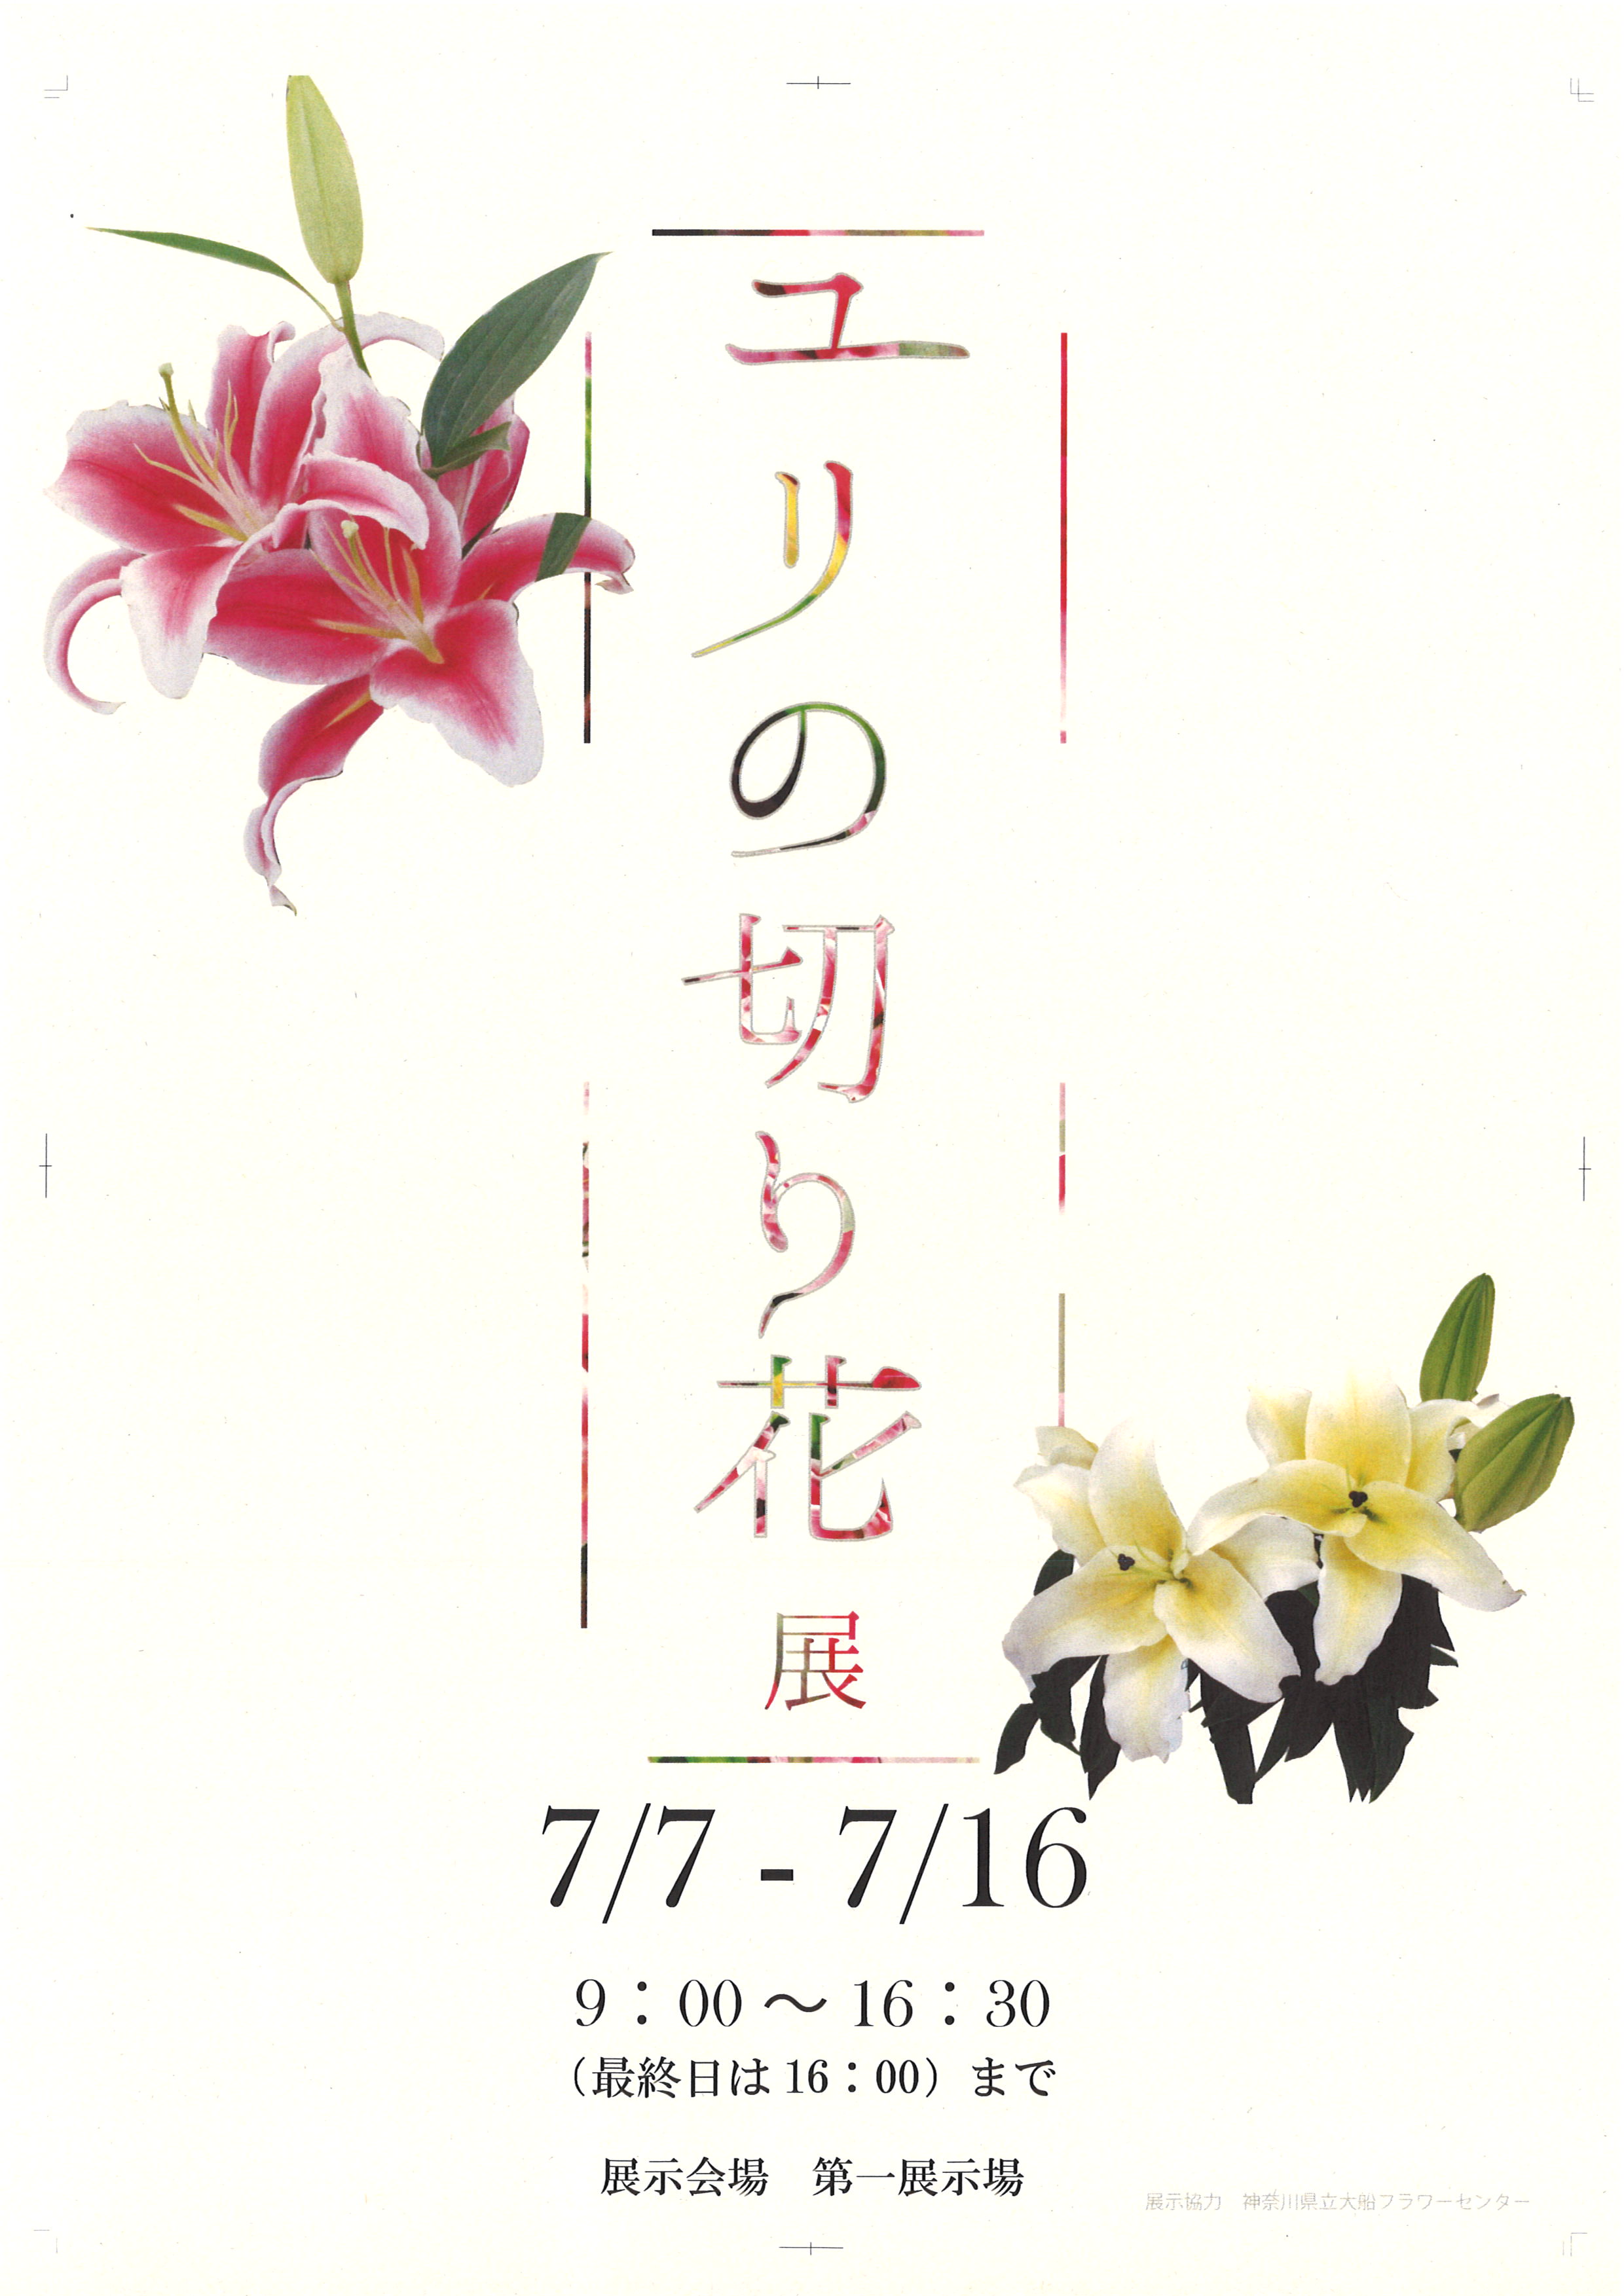 ユリの切り花展 イベント 神奈川県立大船フラワーセンター